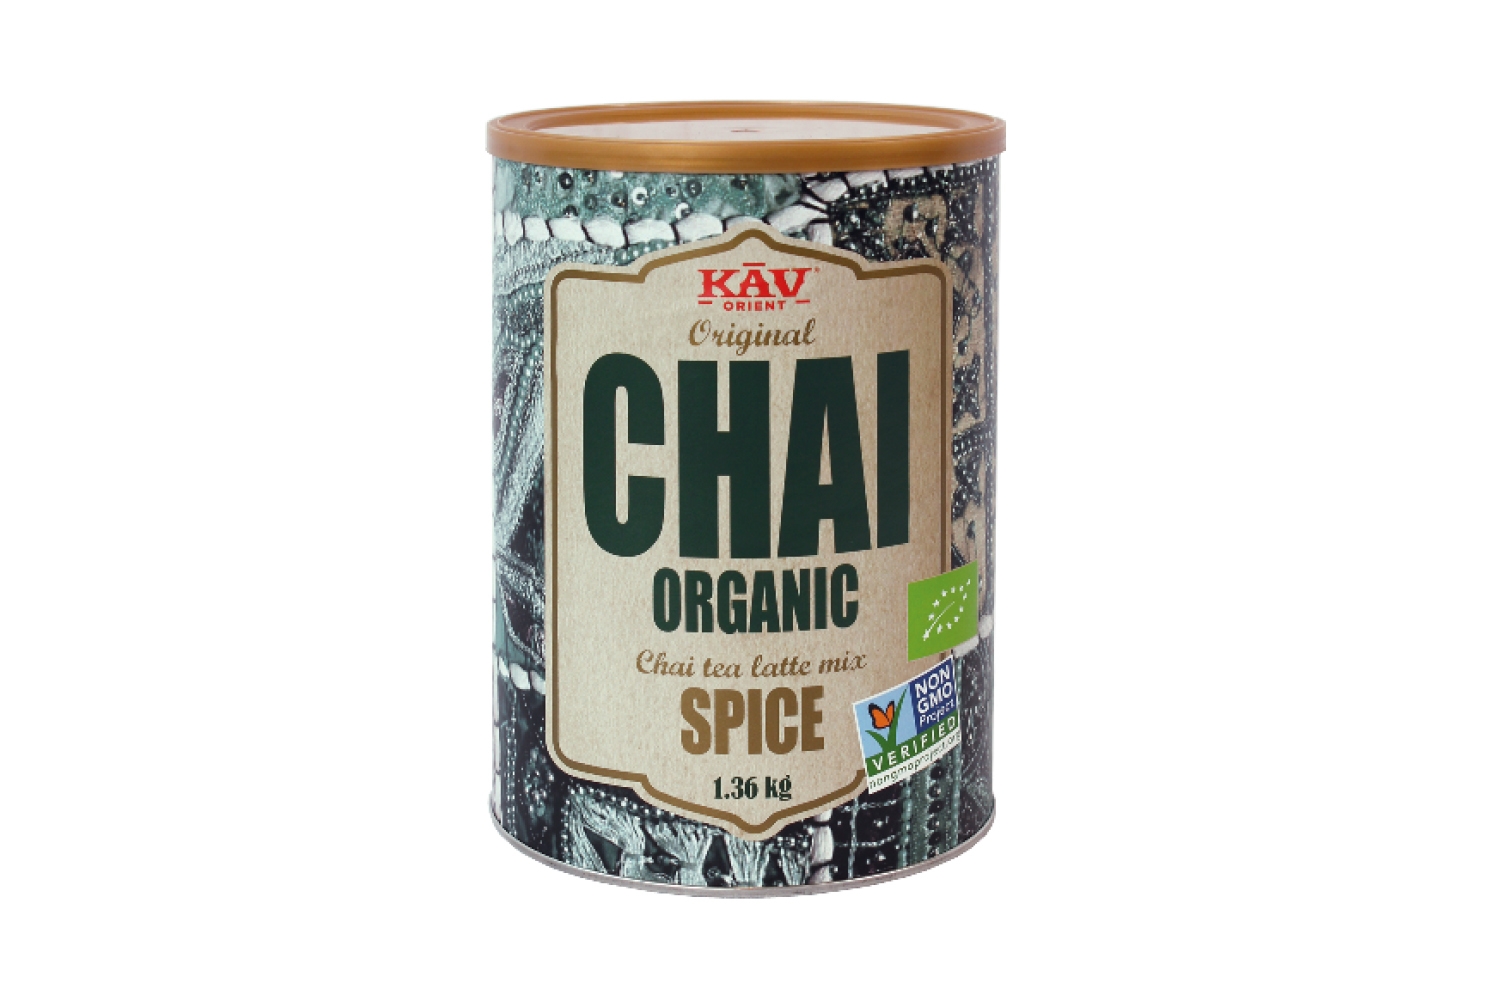 Økologisk Chai mix fra amerikanske KAV